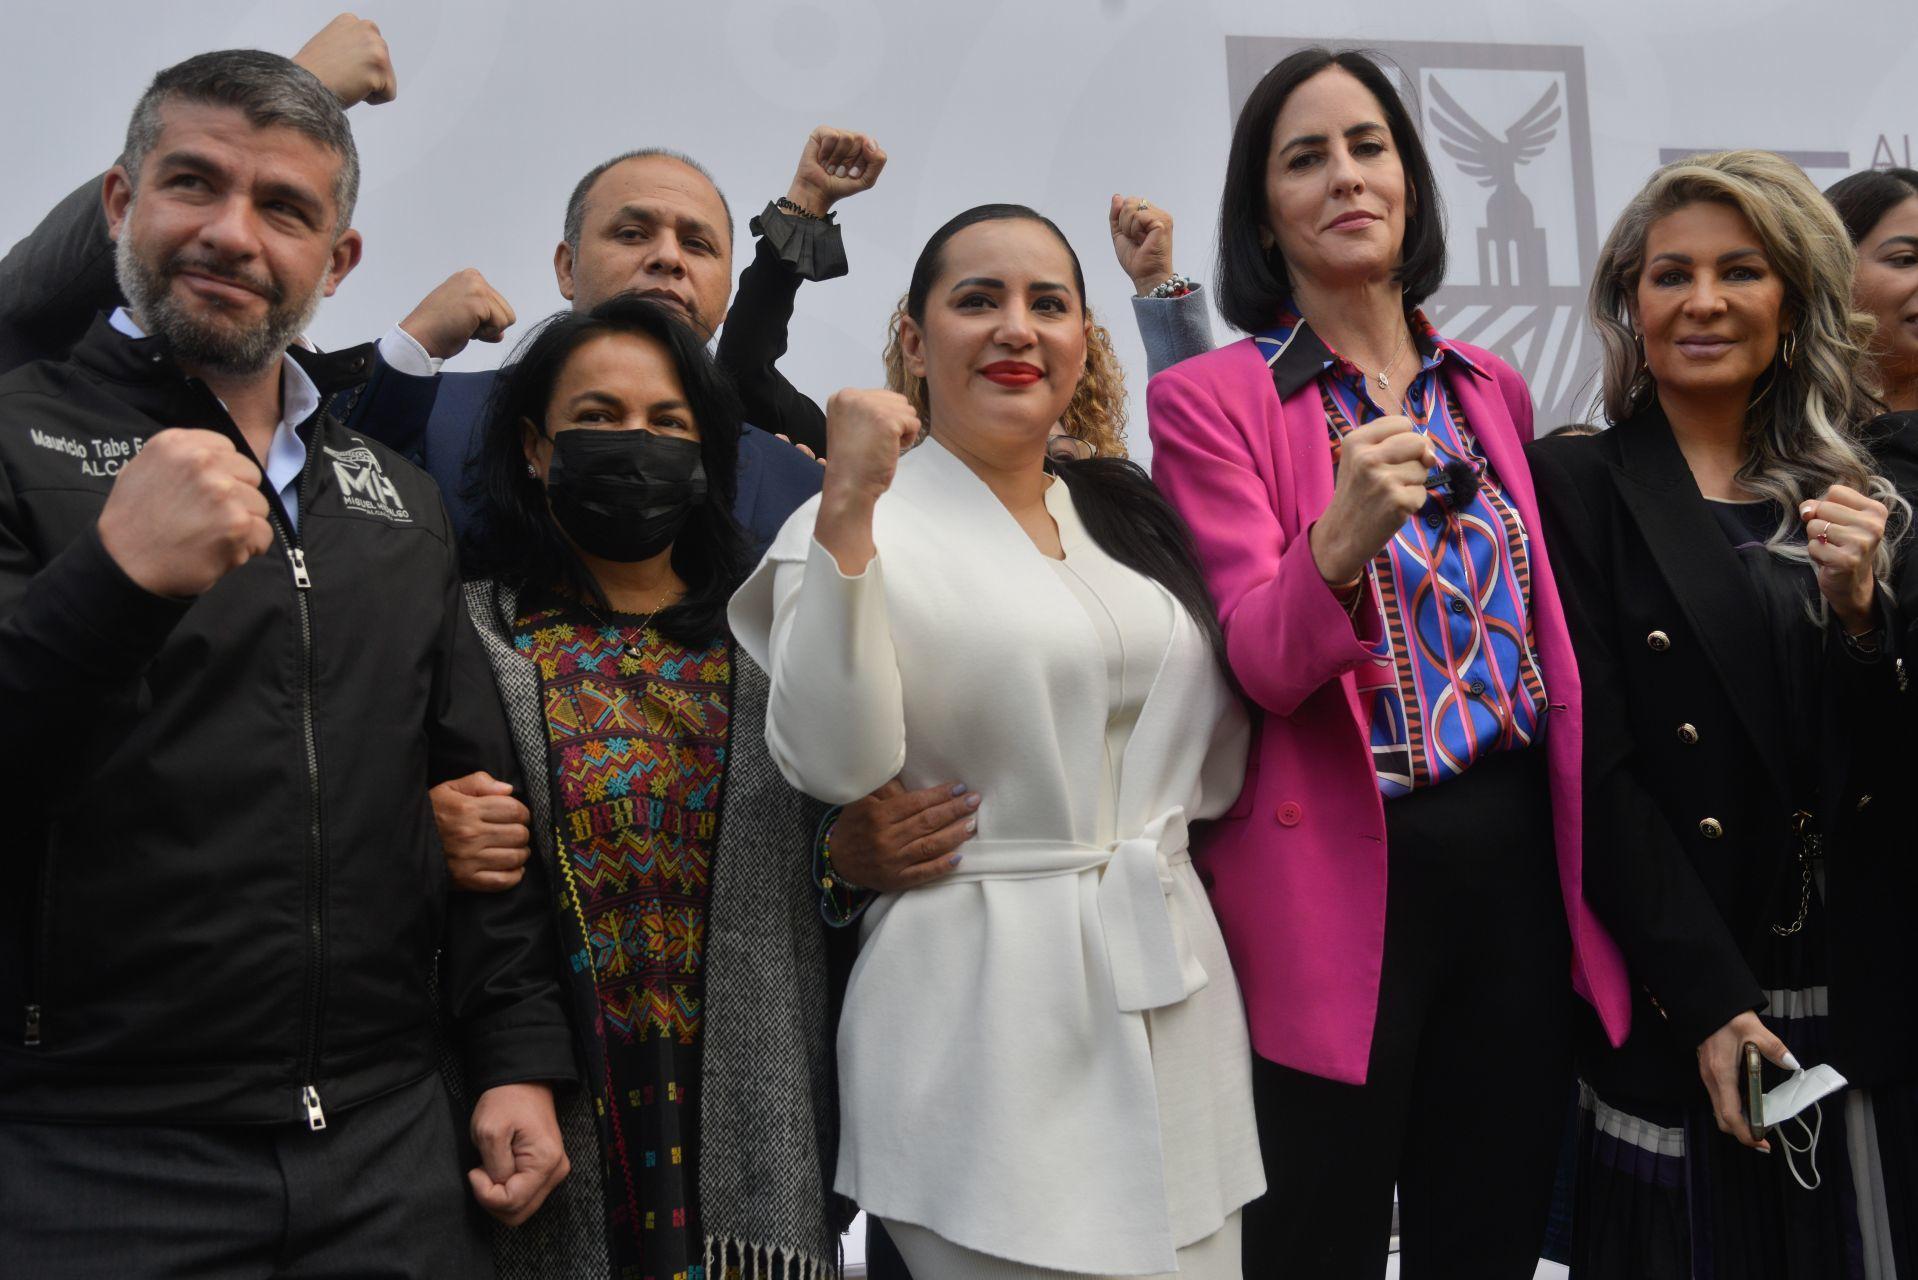 Alcaldes de oposición arropan a Sandra Cuevas: “No superan la derrota, ya déjenos trabajar”, piden a Sheinbaum